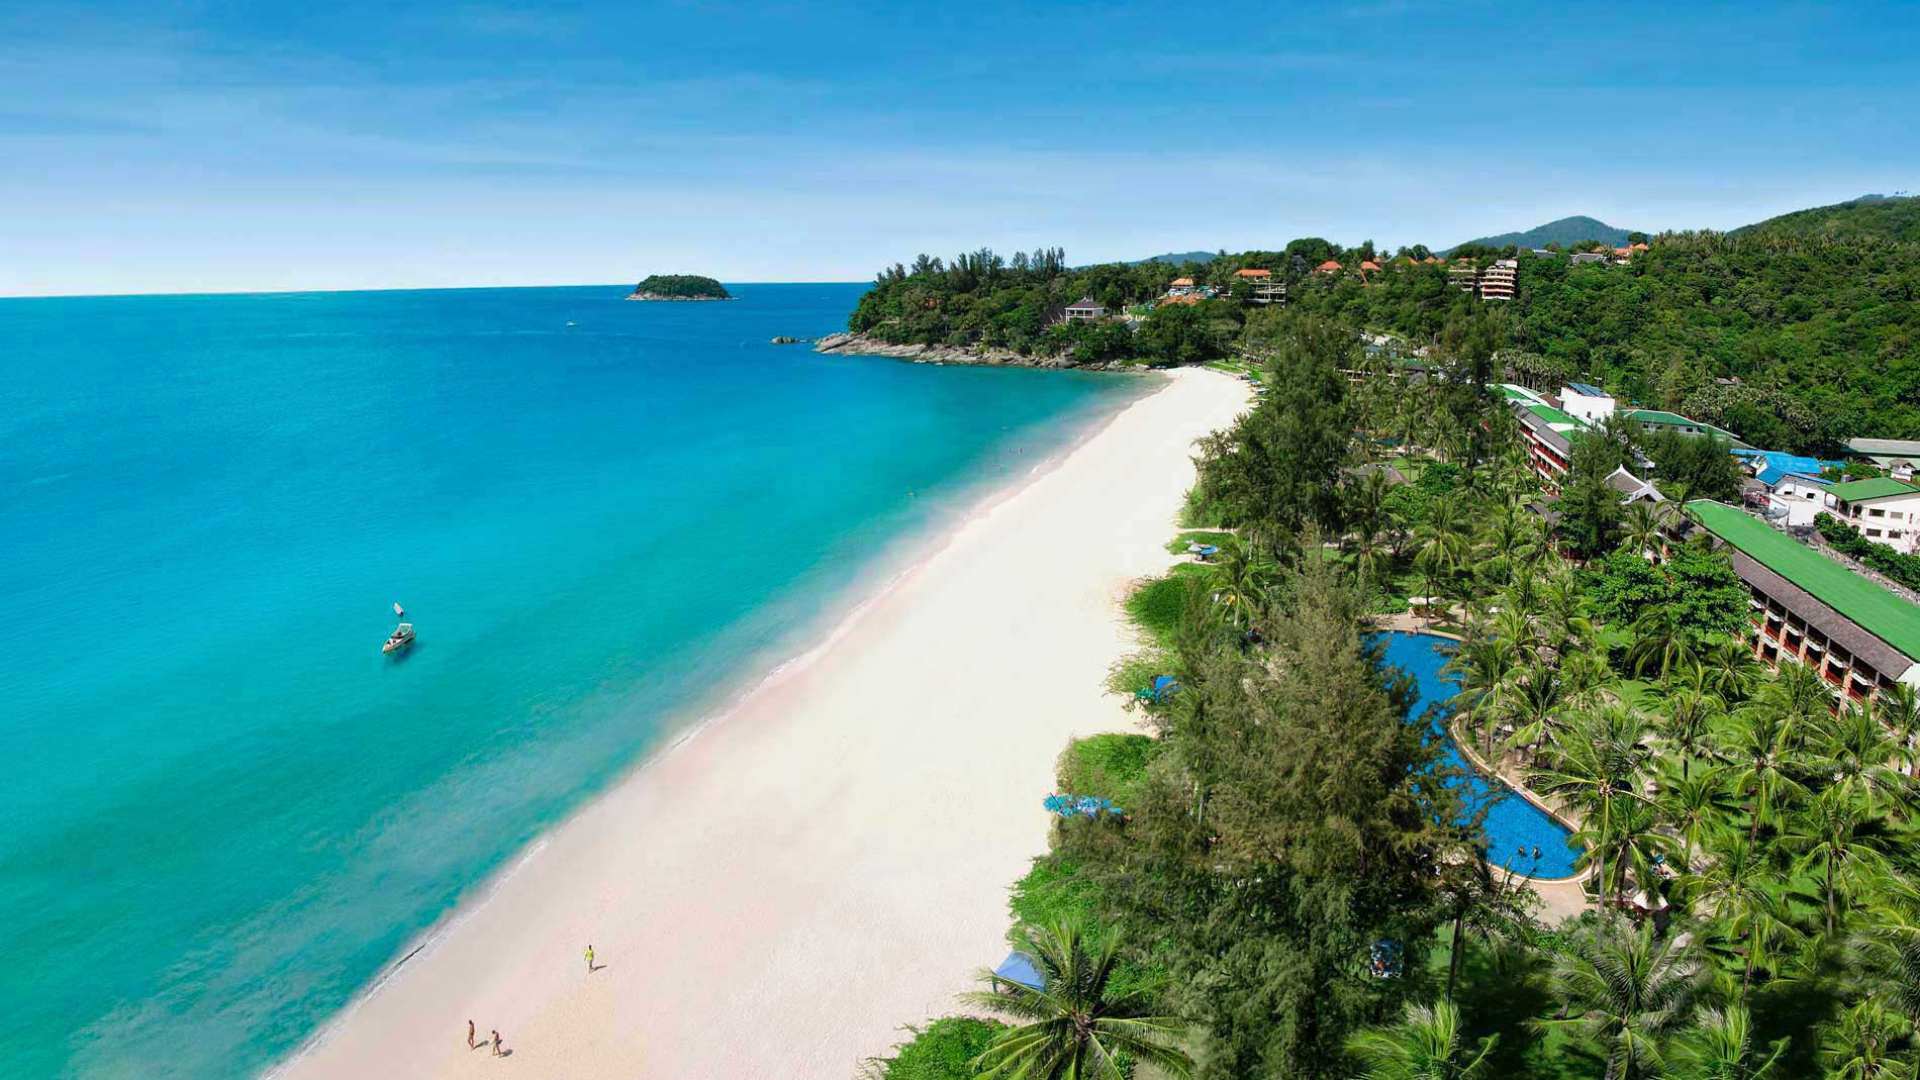 Katathani Phuket Beach Resort Phuket Thailand Profil Rejser